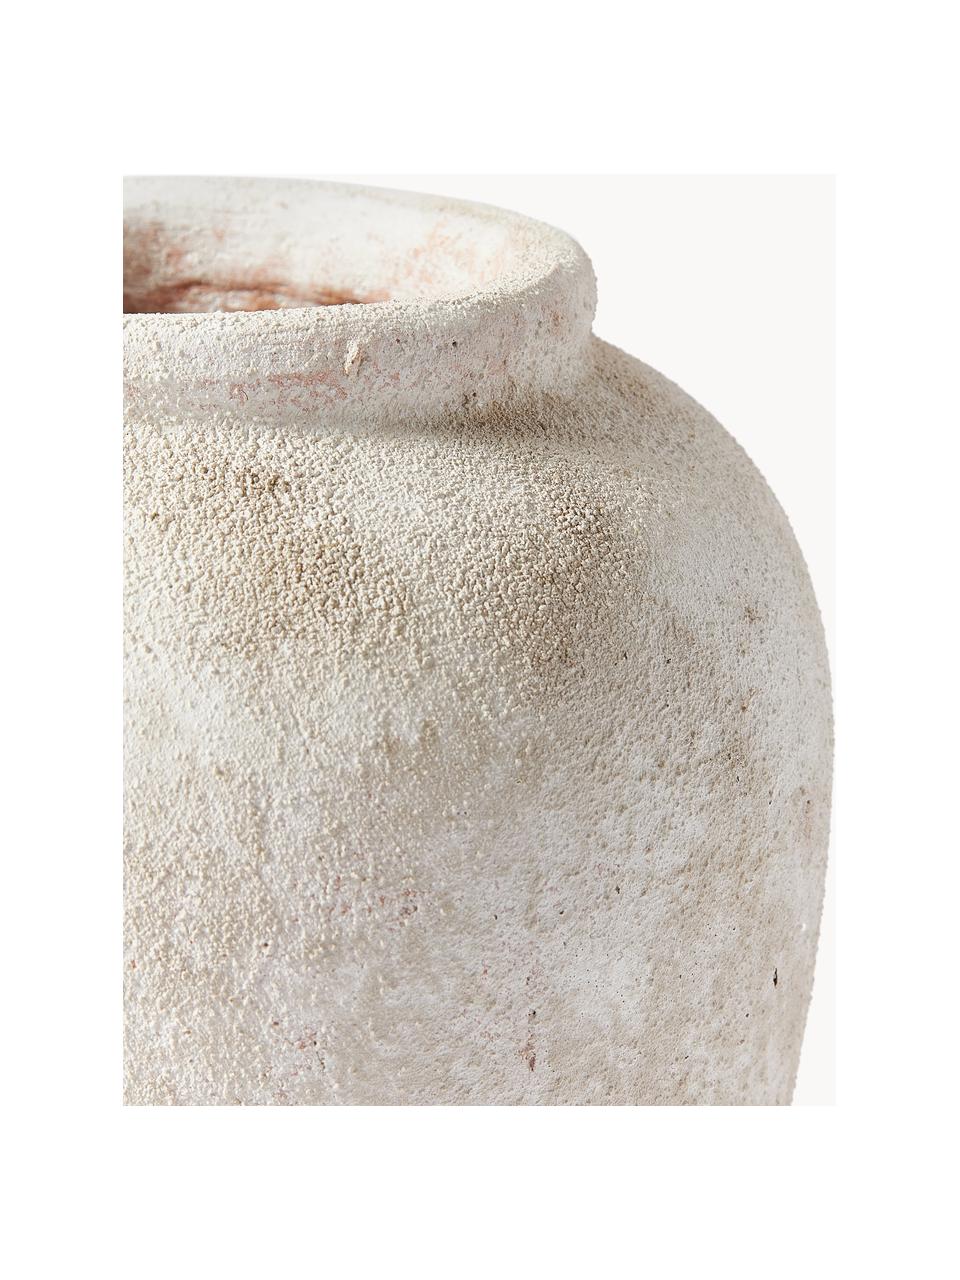 Vase à poser au sol Leana, haut. 32 cm, Grès cérame, Beige clair, Ø 26 x haut. 32 cm